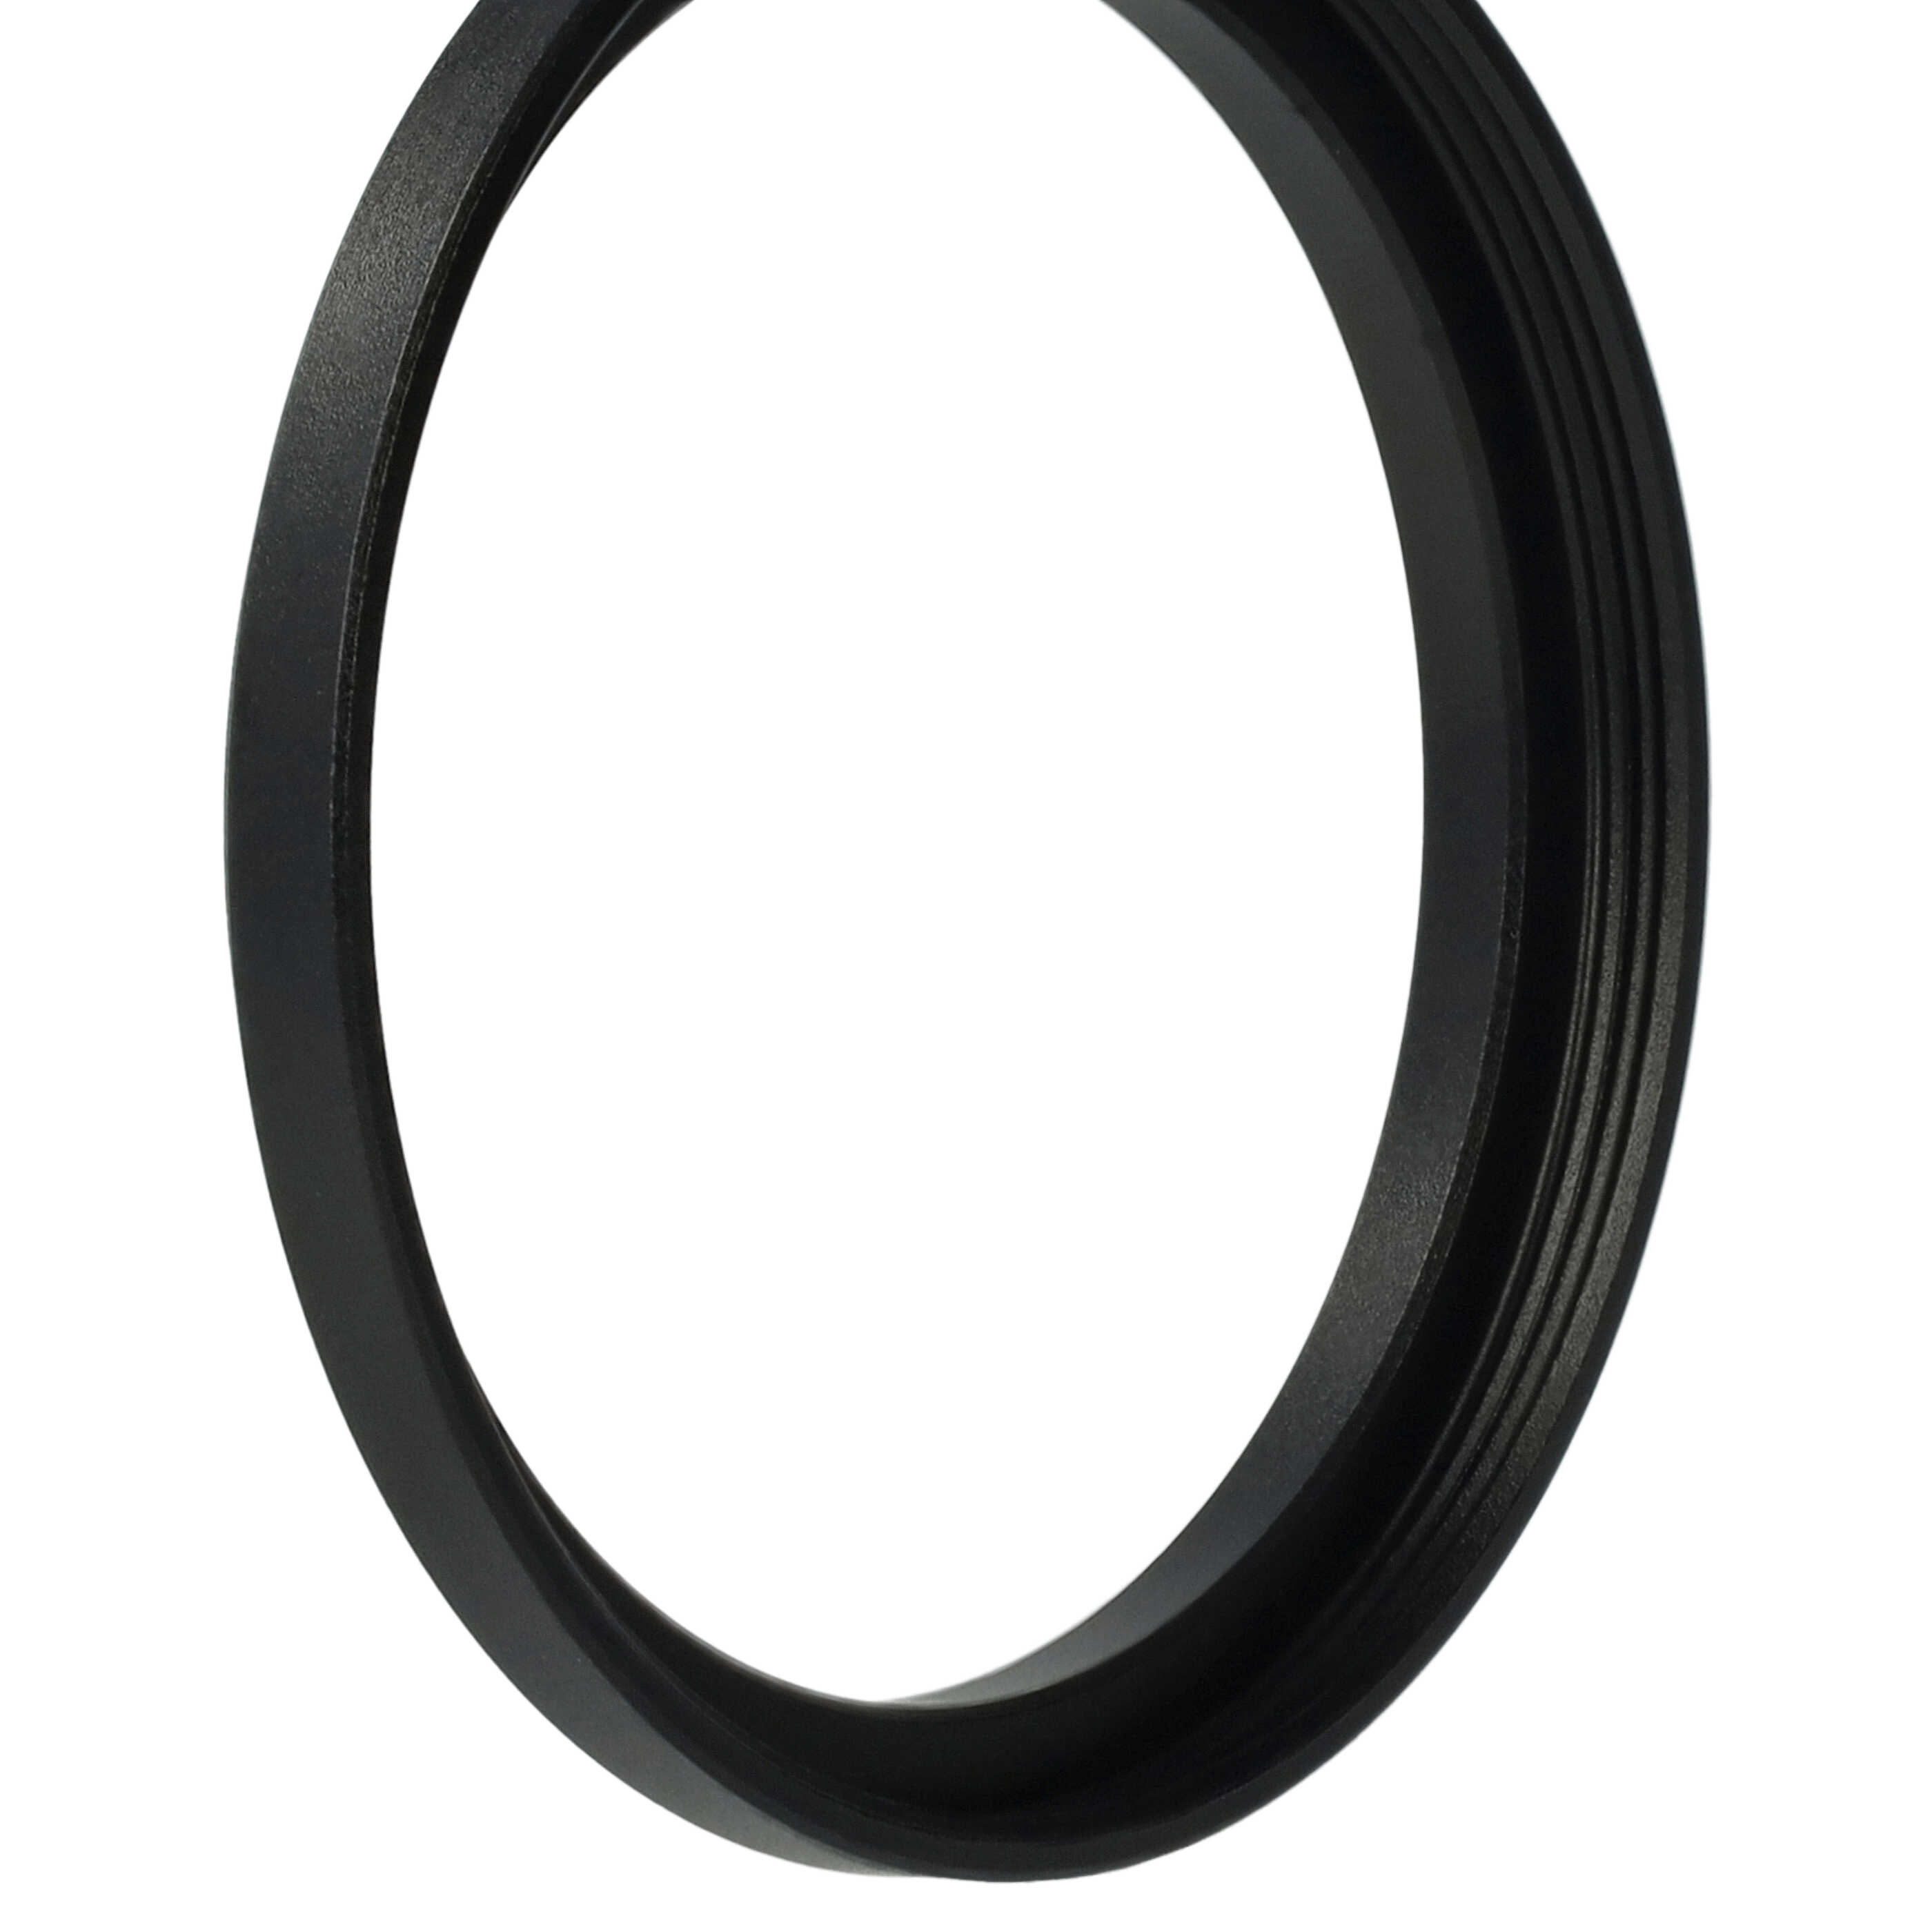 Step-Up-Ring Adapter 43,5 mm auf 46 mm passend für diverse Kamera-Objektive - Filteradapter